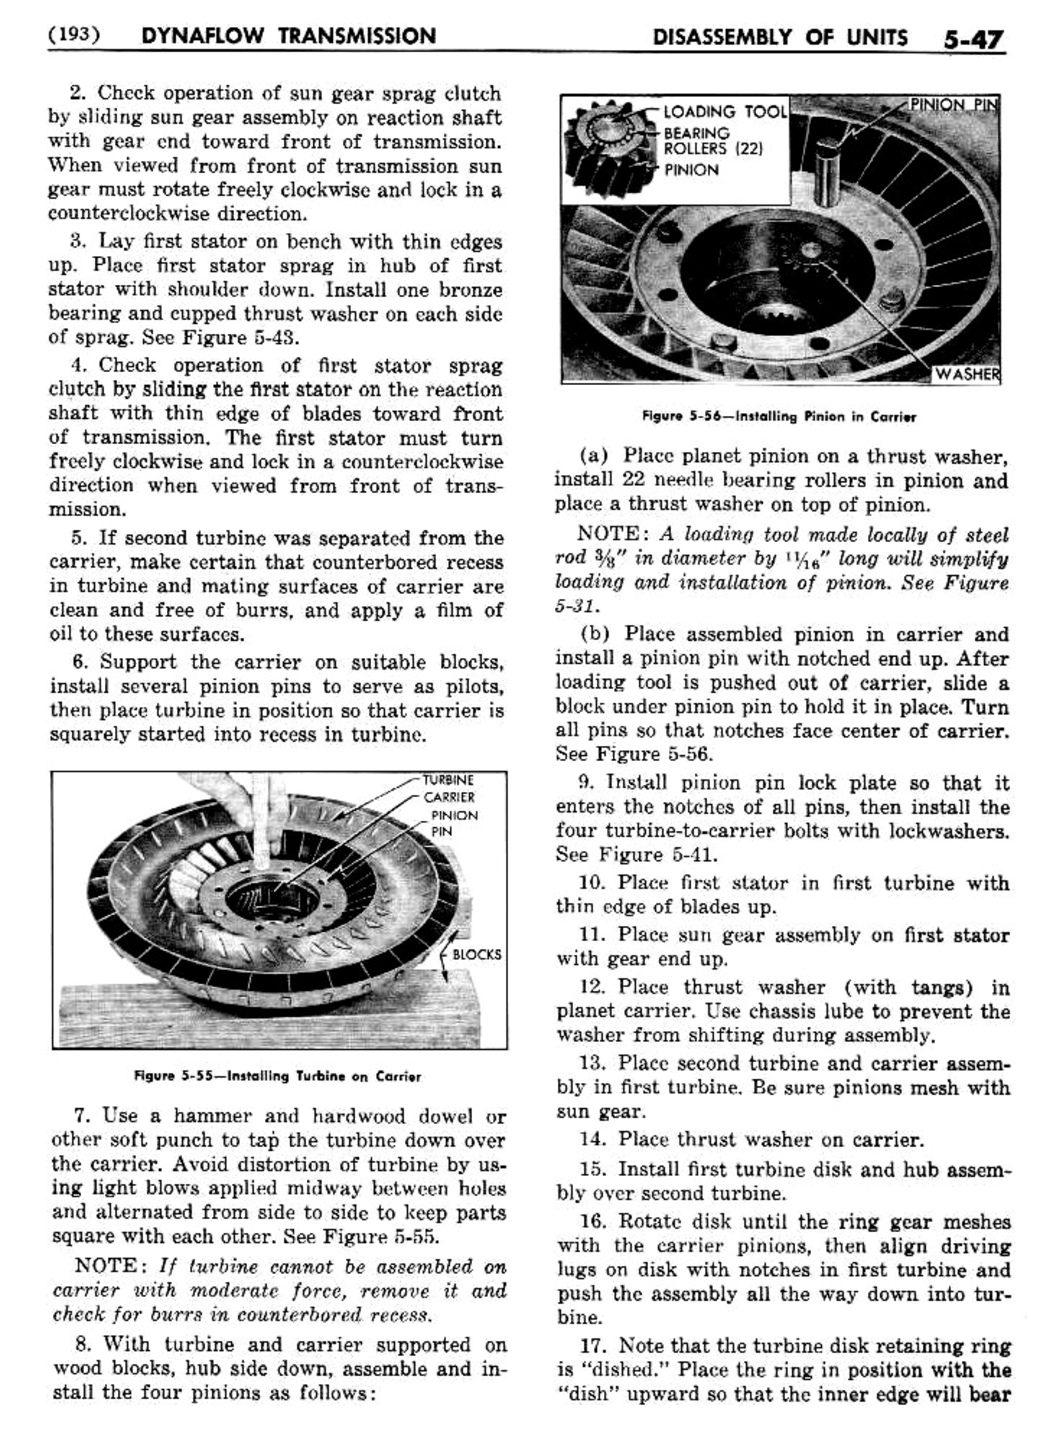 n_06 1956 Buick Shop Manual - Dynaflow-047-047.jpg